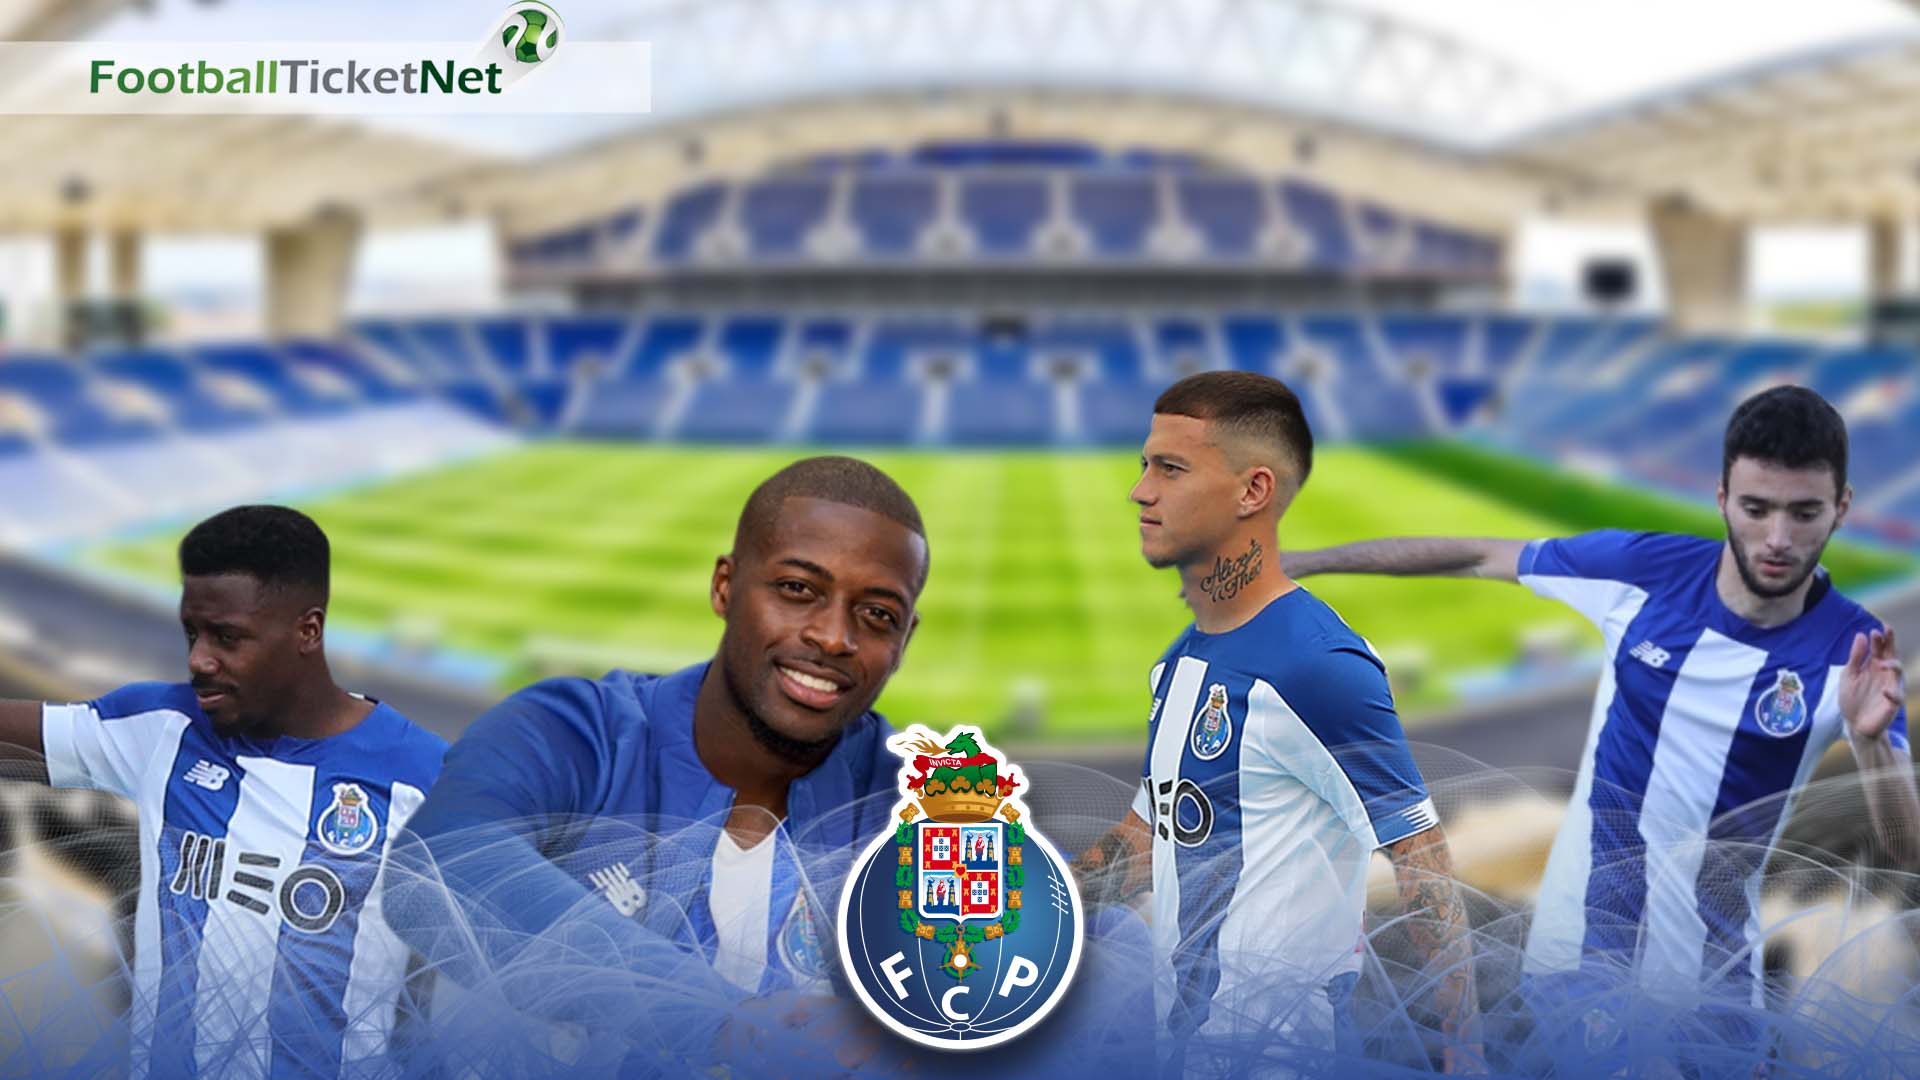 Fácil de leer tambor Reacondicionamiento Buy FC Porto Tickets 2022/23 | Football Ticket Net